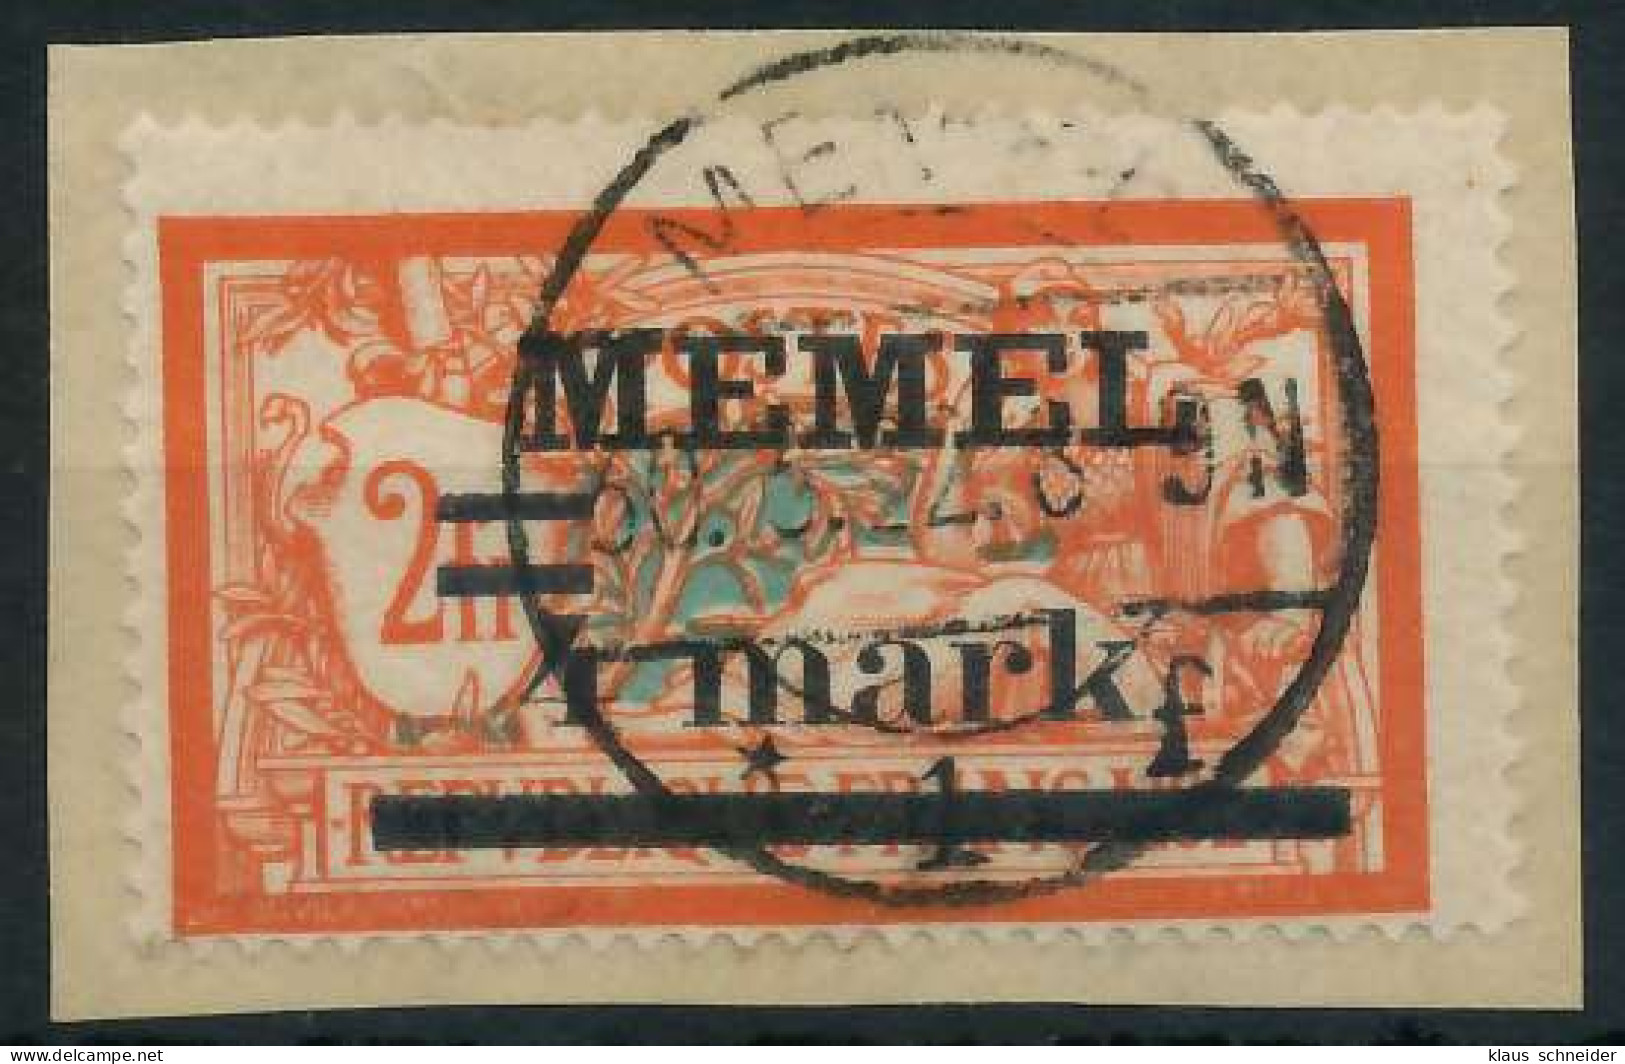 MEMEL 1920 Nr 31 Iy BRIEF X447826 - Memel (Klaïpeda) 1923